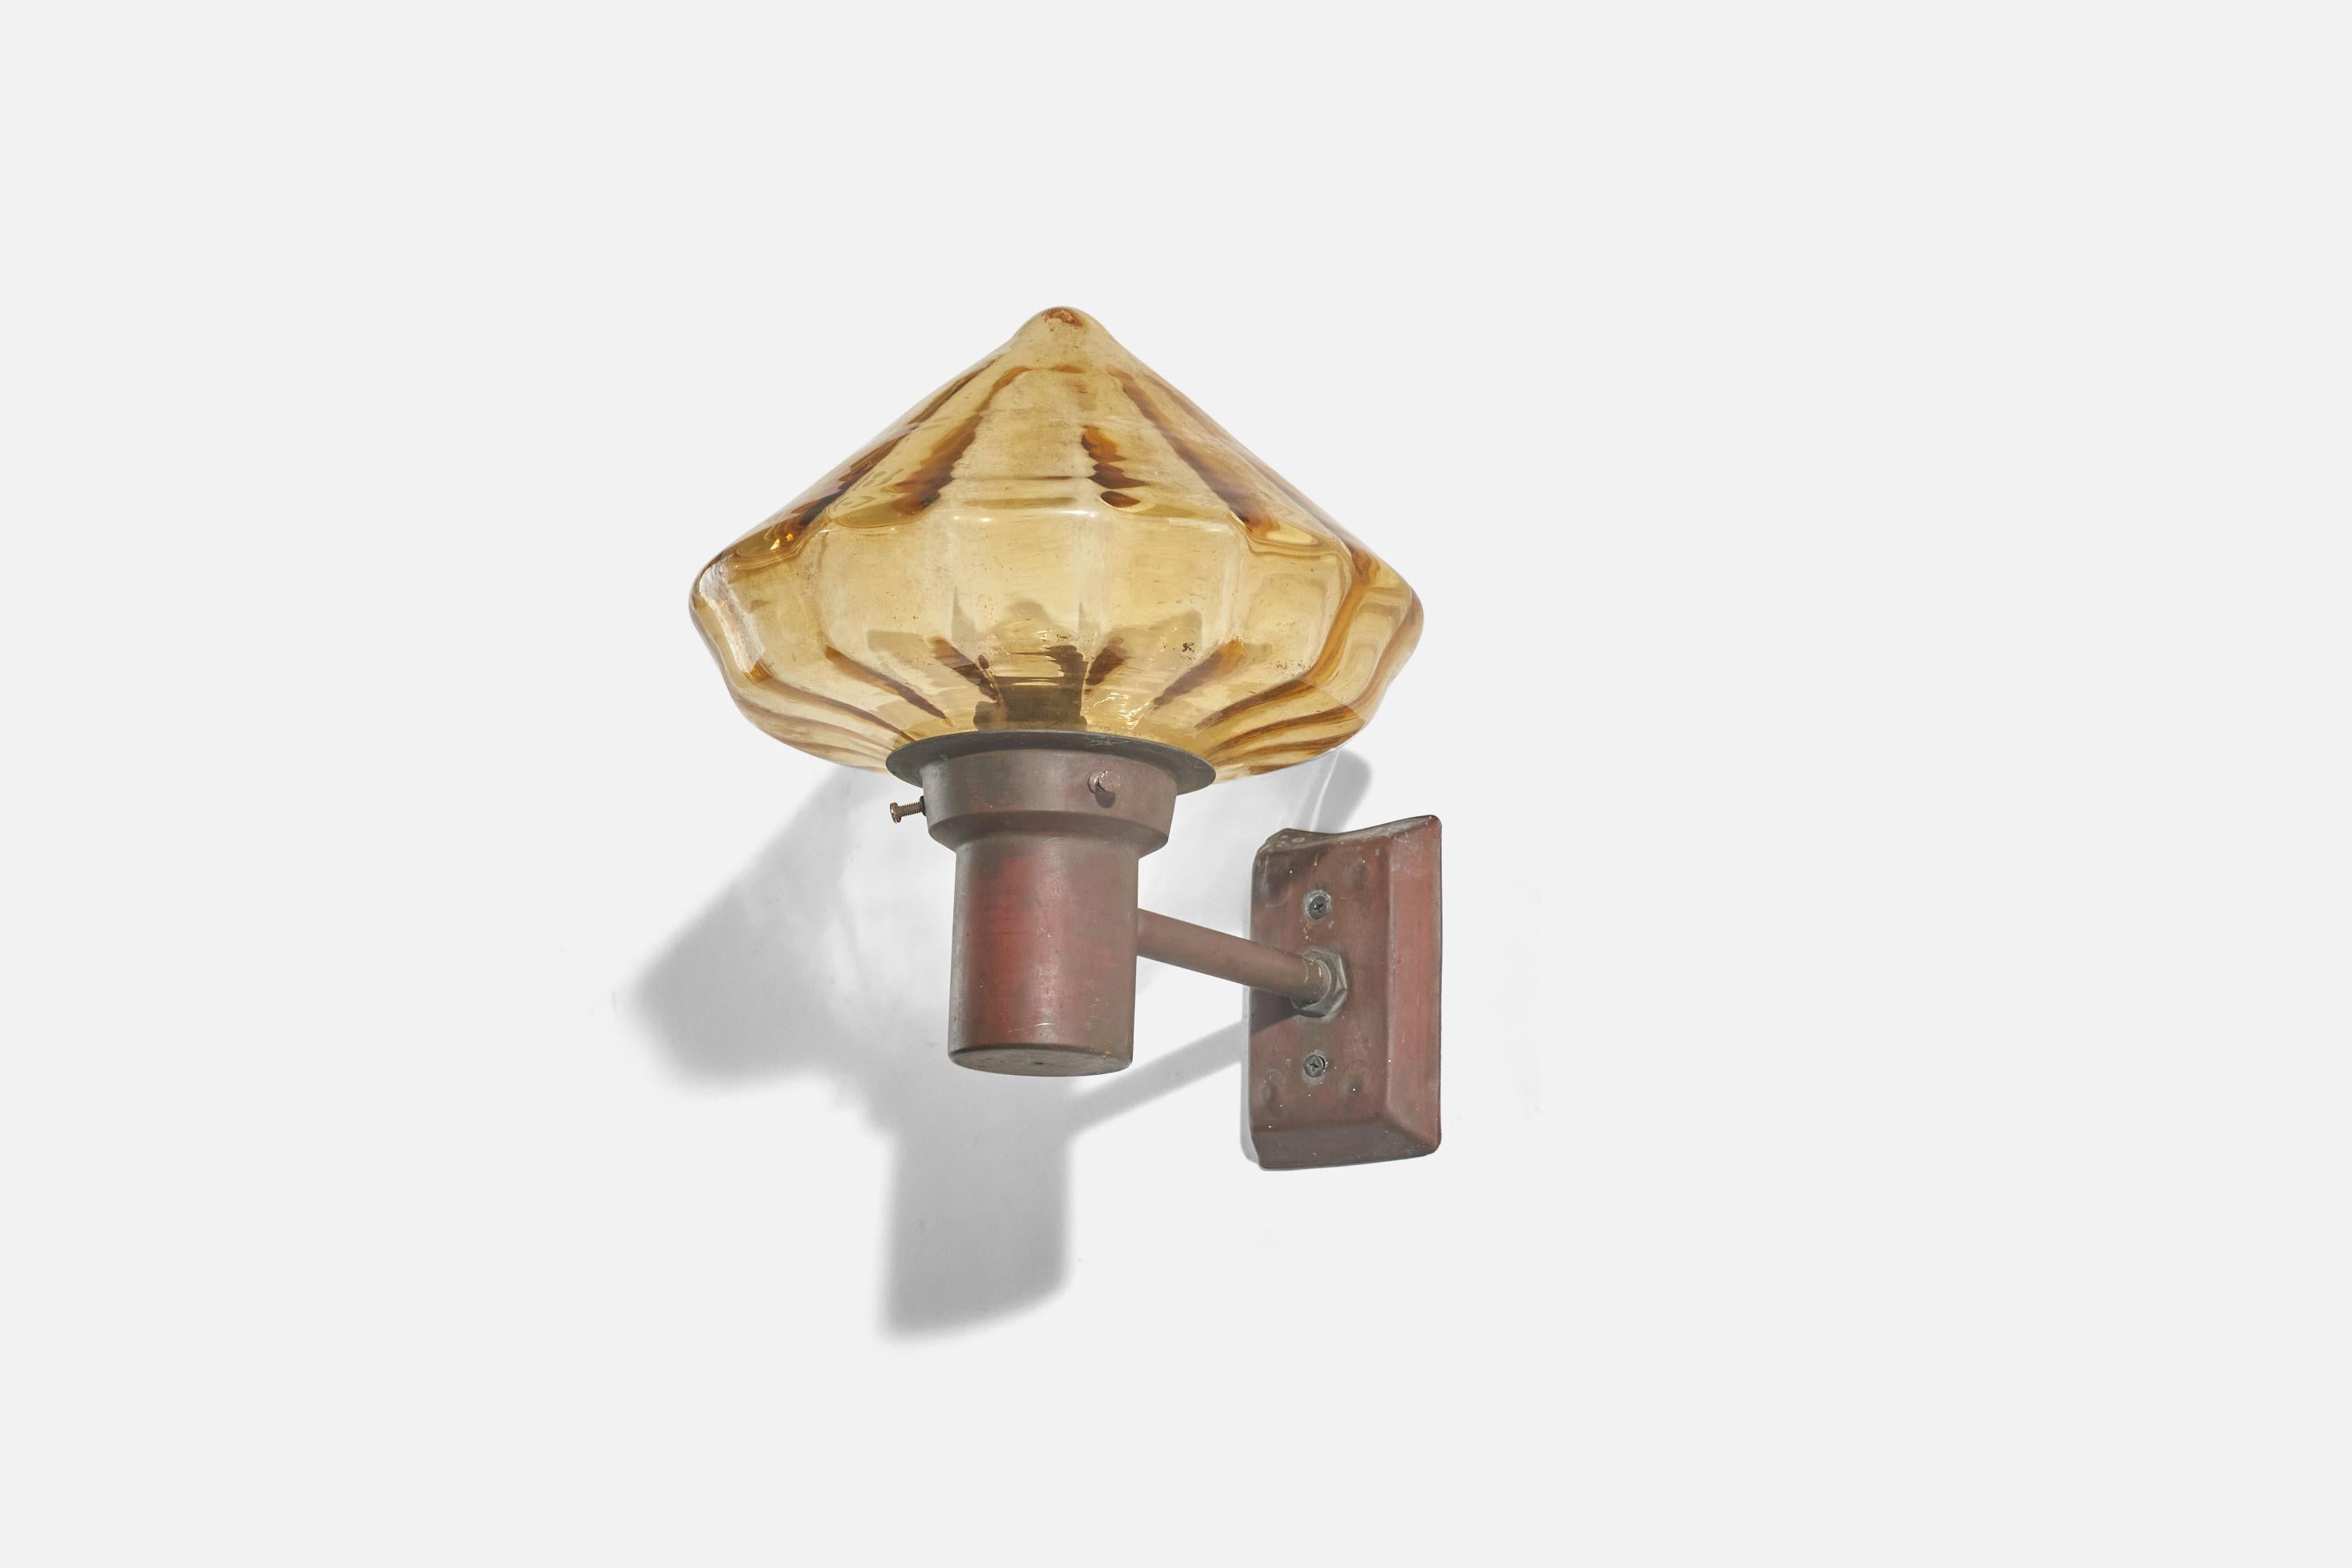 Leuchter aus Kupfer und gelbem Glas, entworfen und hergestellt in Schweden, ca. 1940er Jahre.

Abmessungen der Rückplatte (Zoll) : 4,93 x 3,31 x 0,74 (Höhe x Breite x Tiefe)

Fassung für Standard-Glühbirne E-26 mit mittlerem Sockel.

Auf der Leuchte